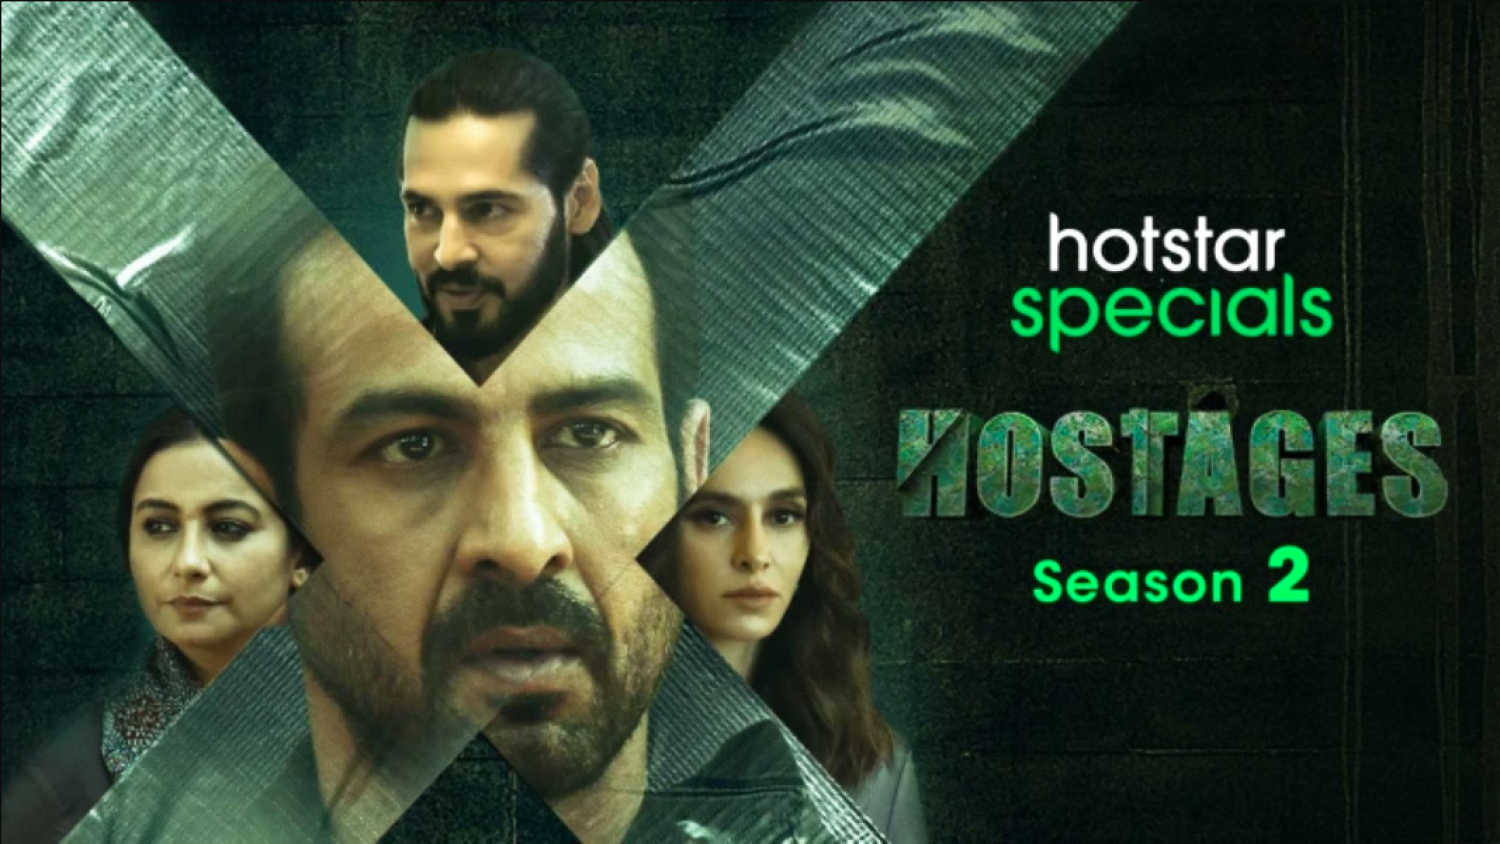 Hostages 2 review : यहां दूसरे सत्र के पांच कमजोर लिंक दिए गए हैं, देखने से पहले पूरी समीक्षा यहां पढ़ें